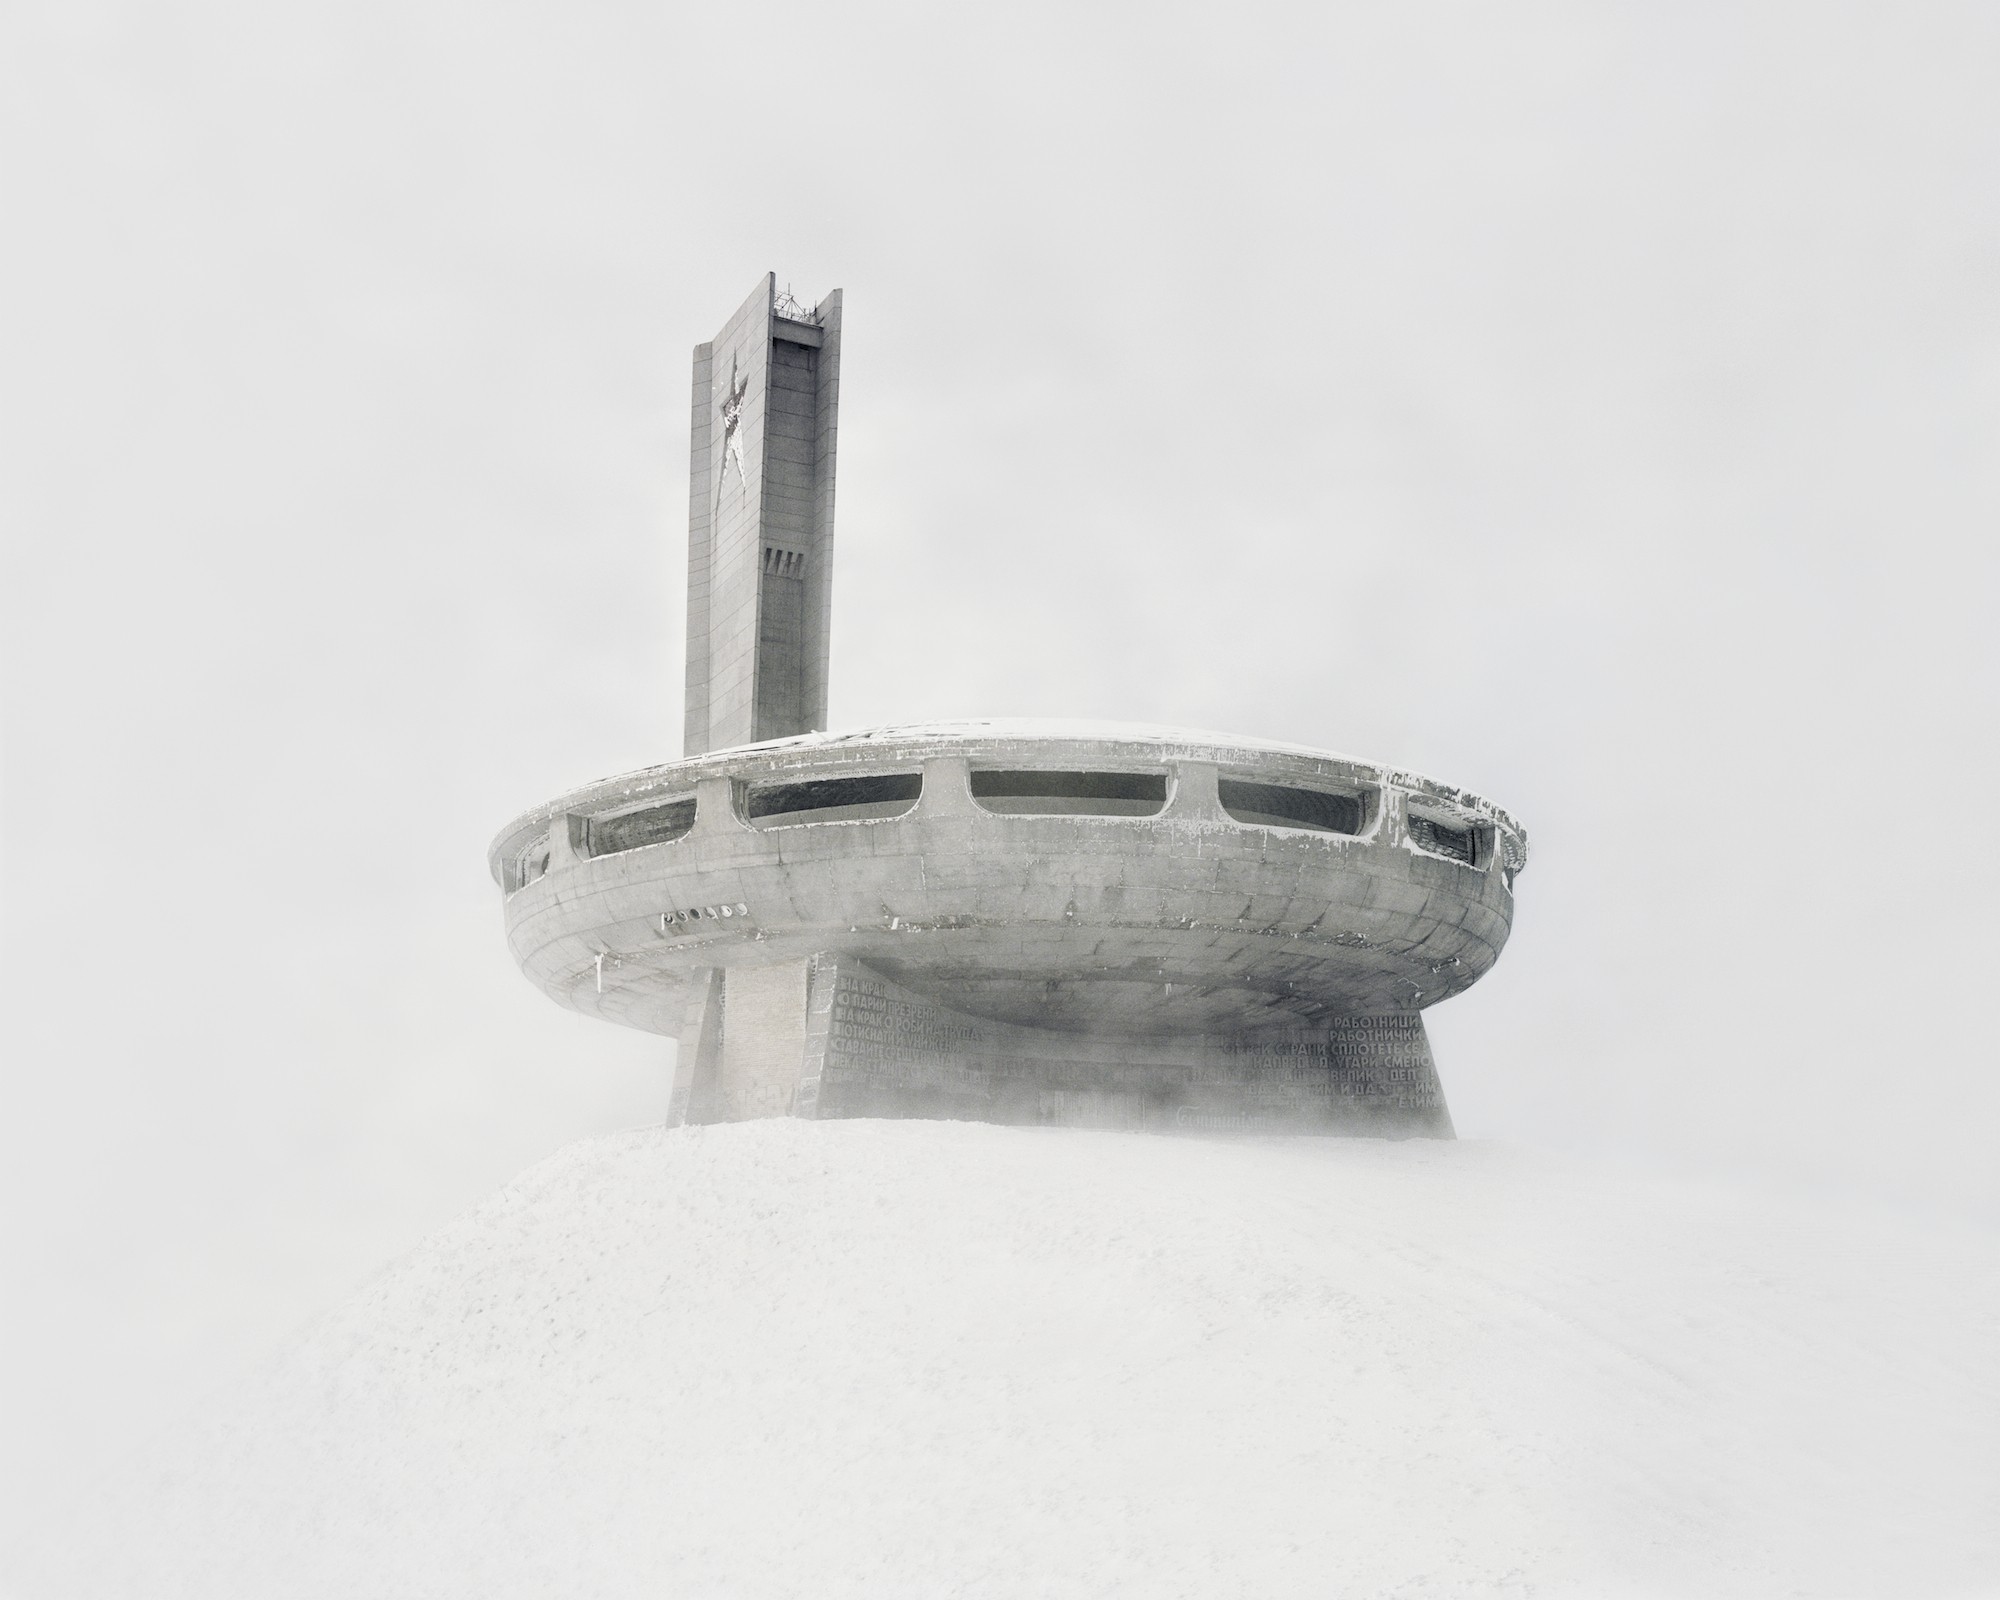 Закрытые территории, 2013-2014. Фотограф Данила Ткаченко 